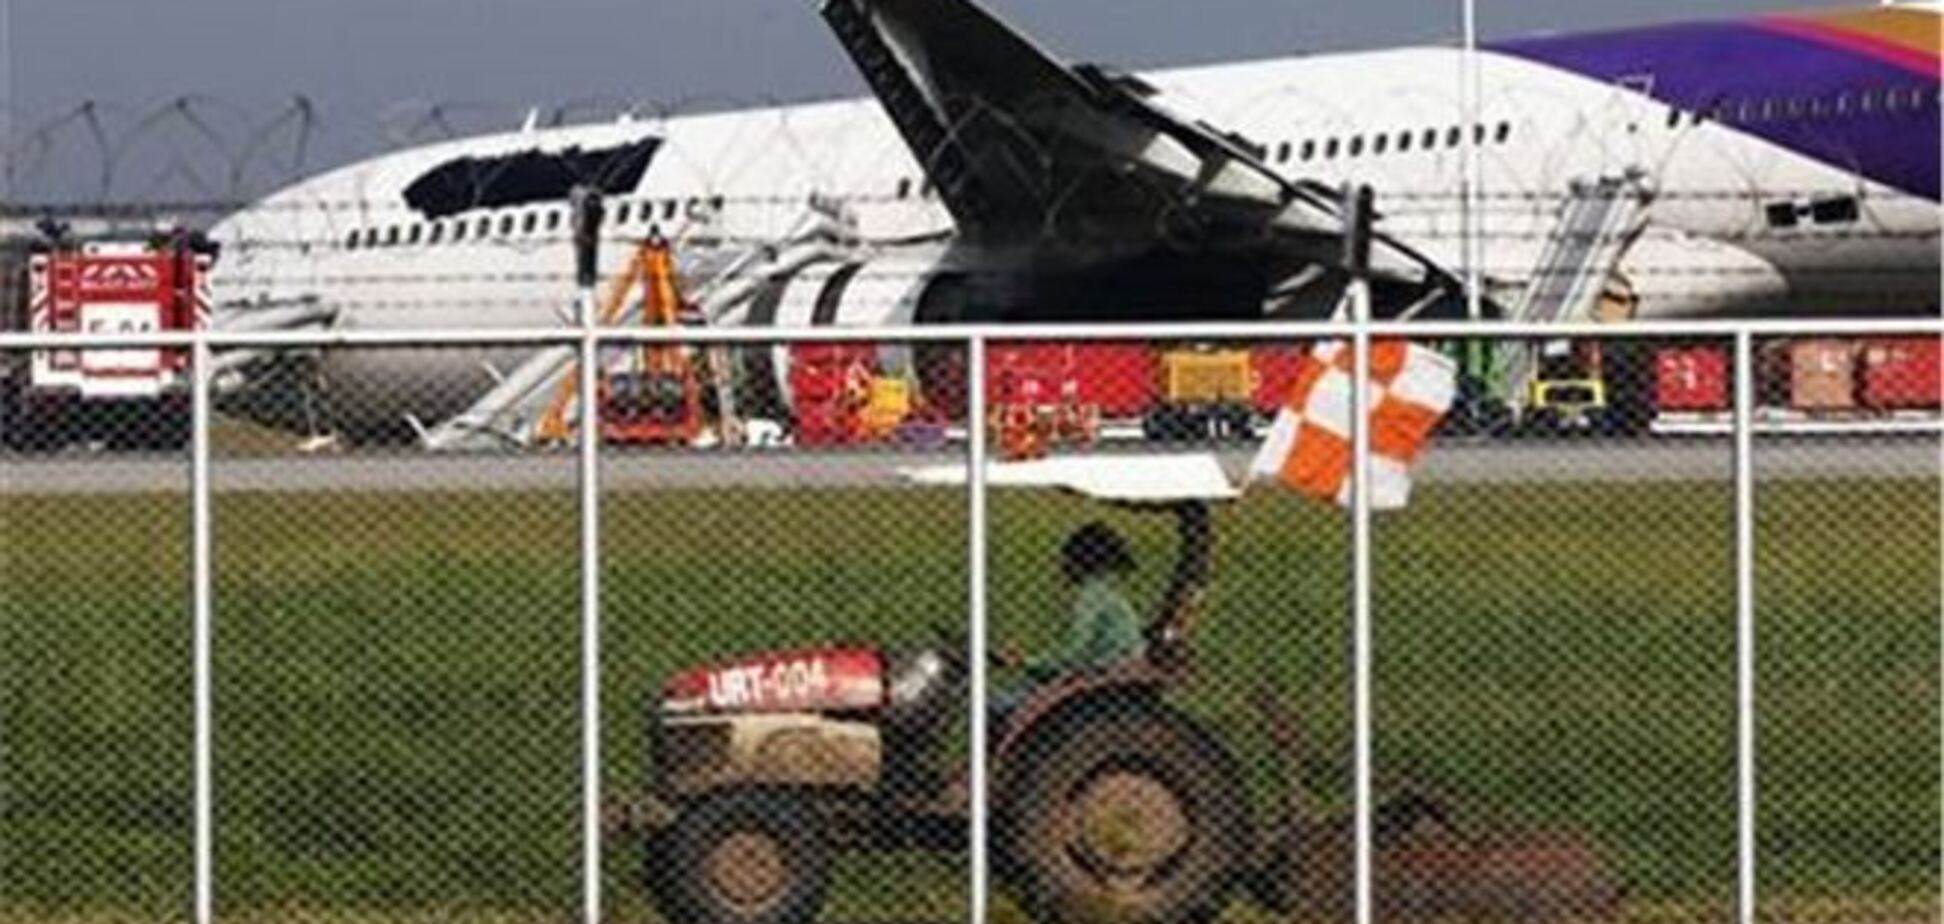 Під час посадки літака в Таїланді постраждали 14 пасажирів